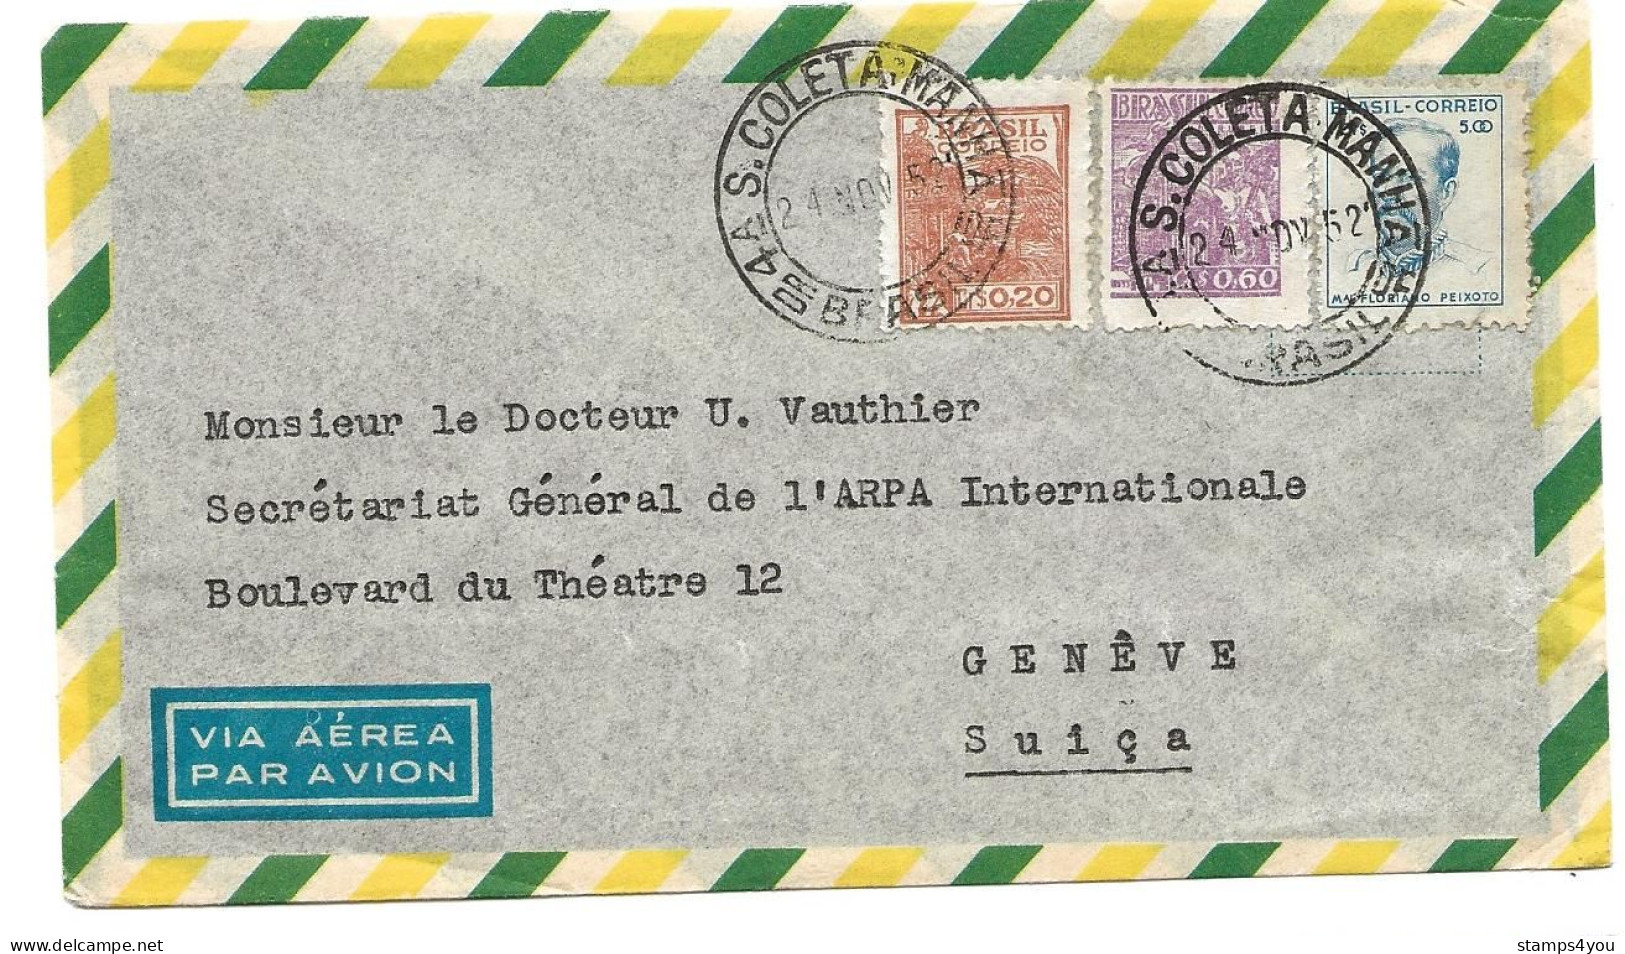 237 - 98 - Enveloppe Envoyée Du Brésil En Suisse 1952 - Covers & Documents